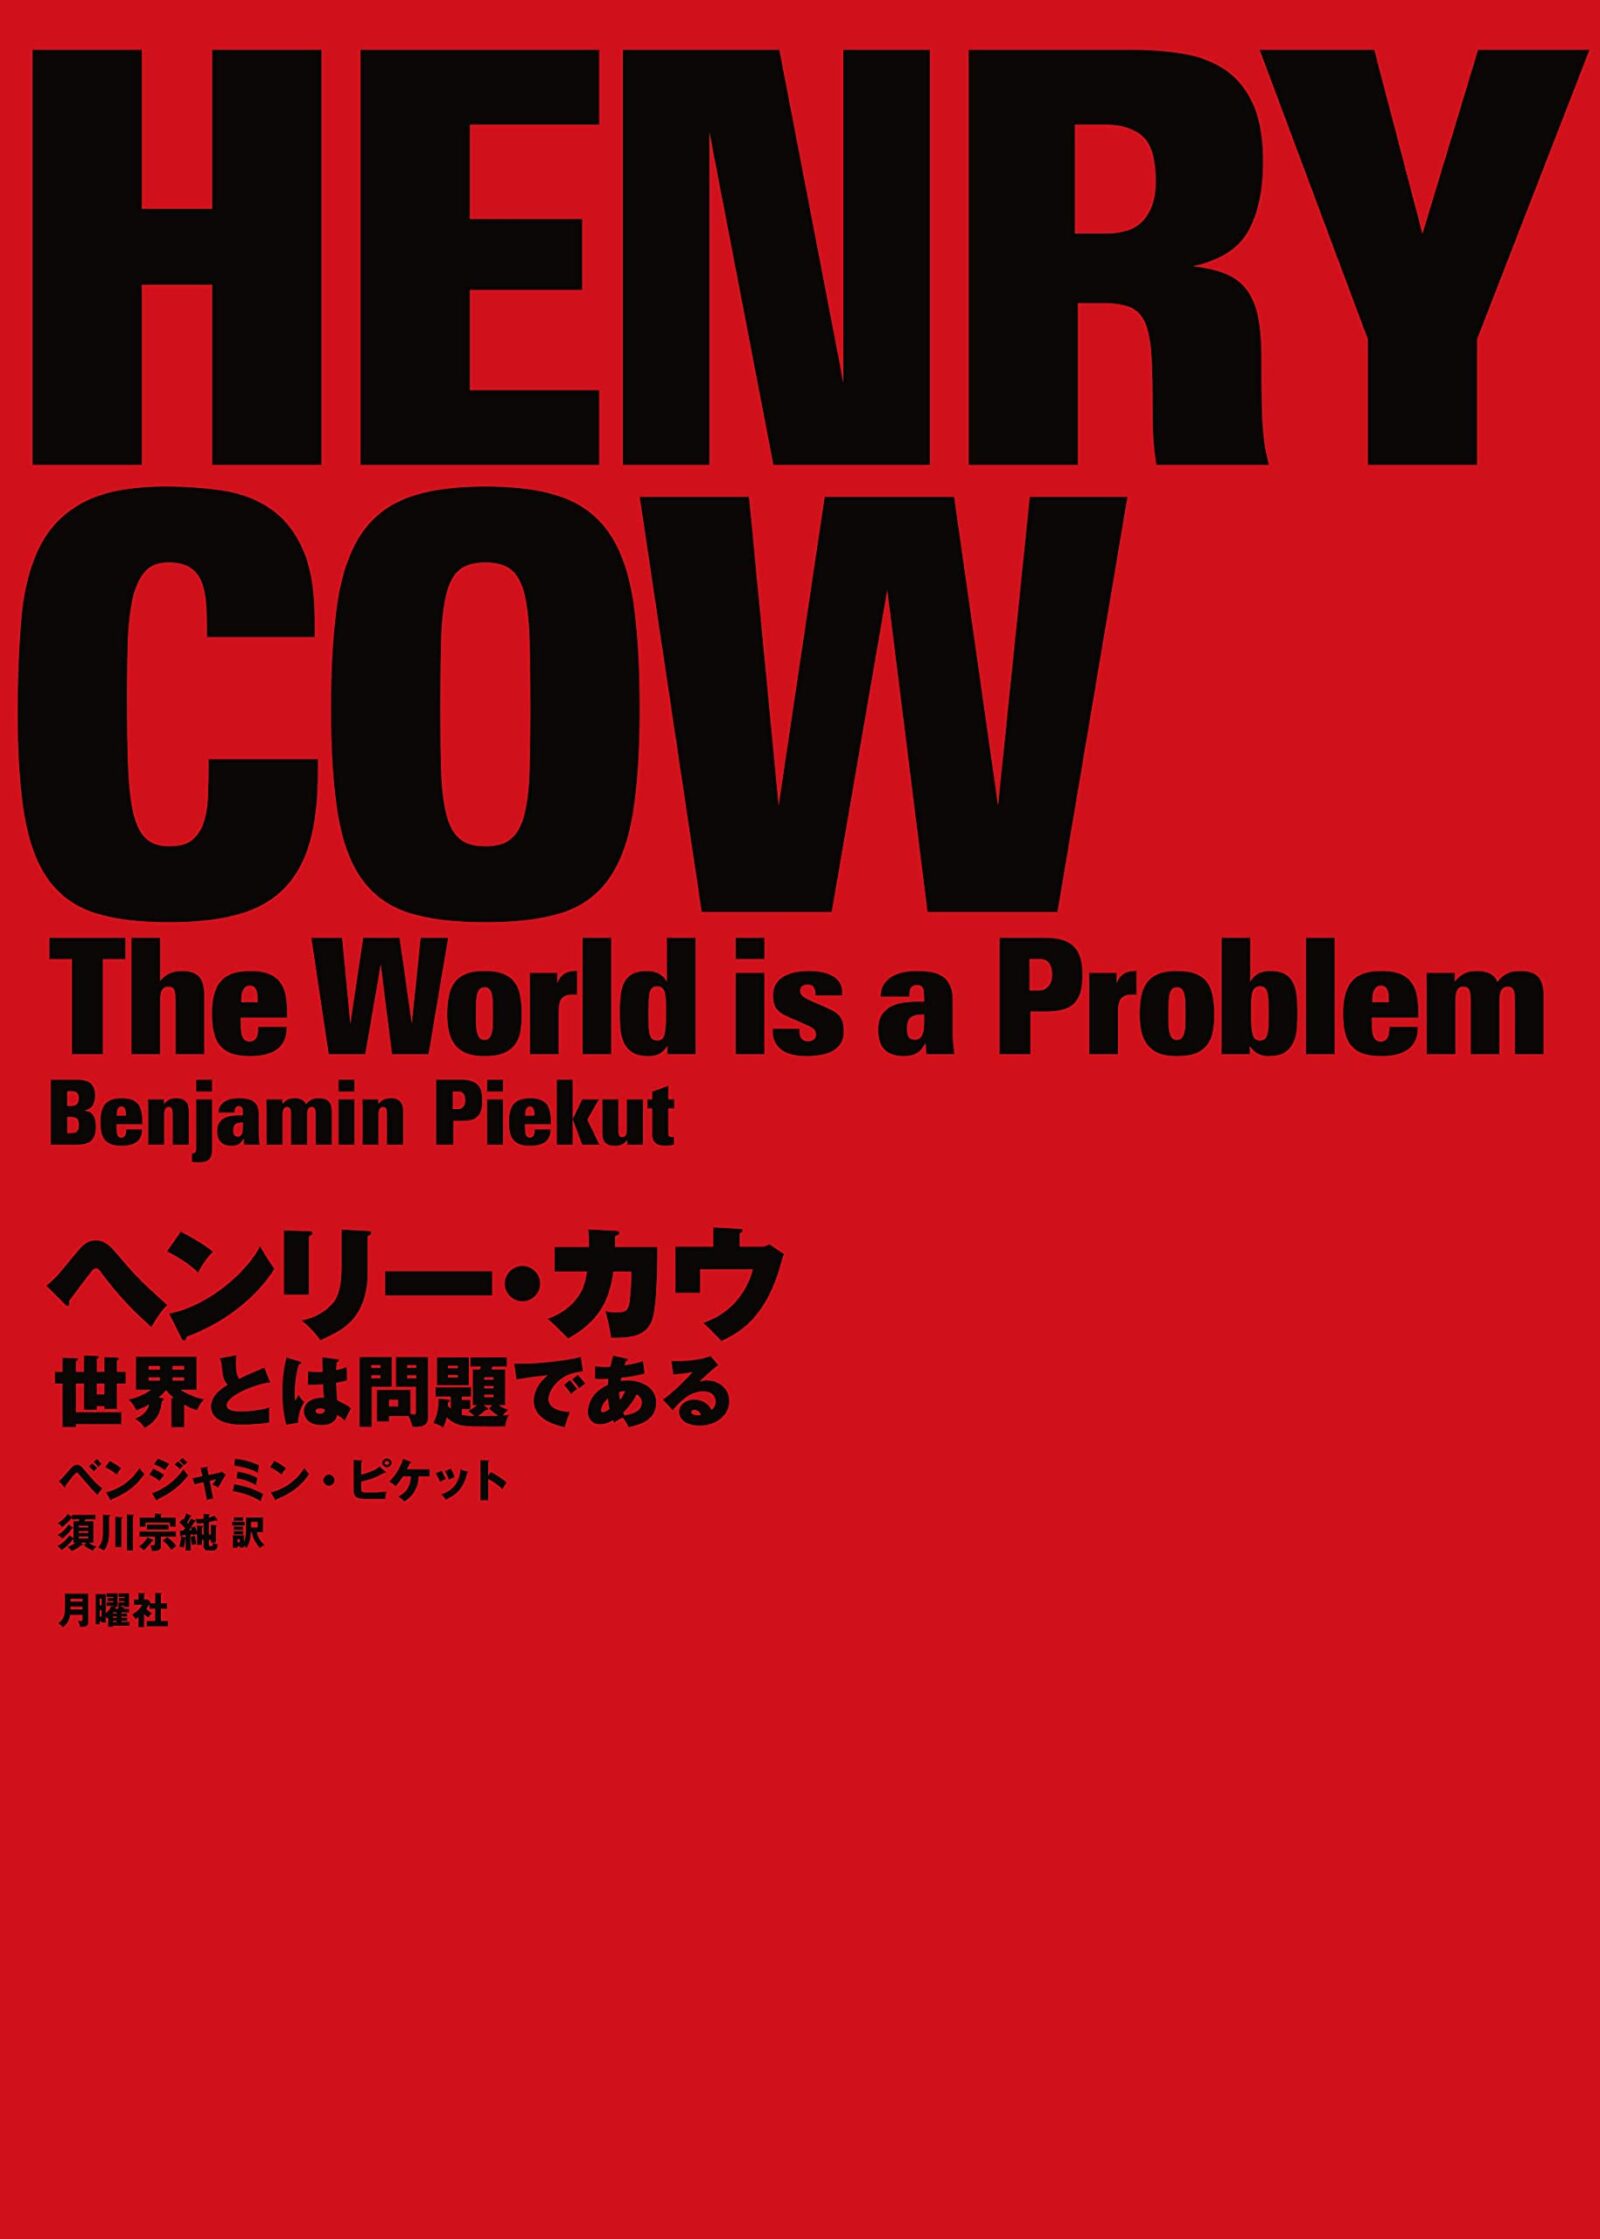 『ヘンリー・カウ　世界とは問題である』 ベンジャミン・ピケット (著)　 須川宗純 (訳)メインビジュアル